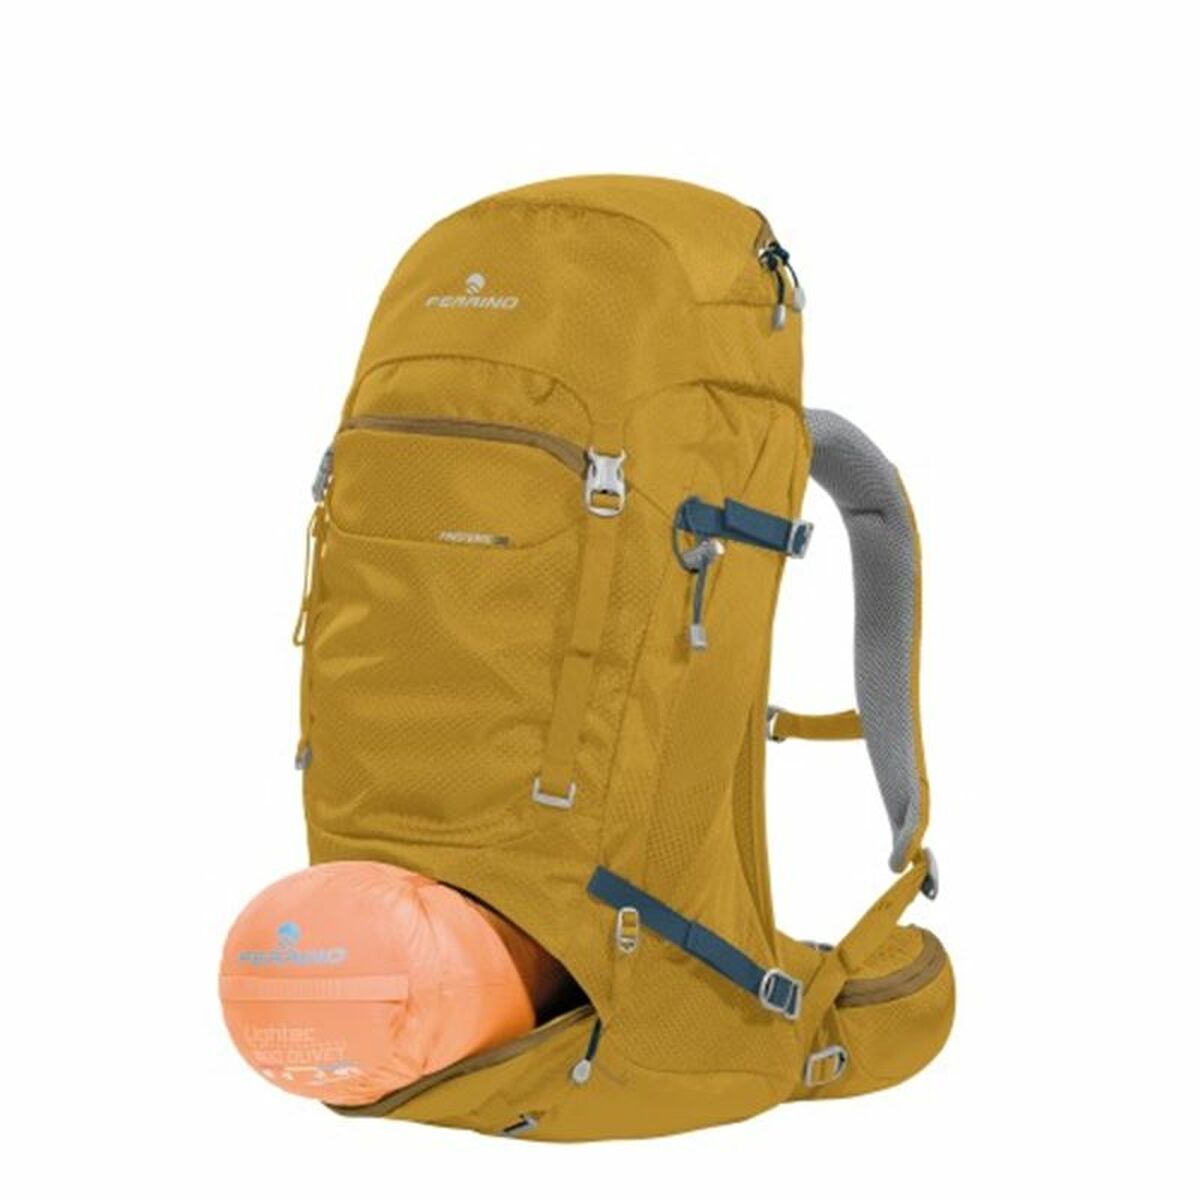 Hiking Backpack Ferrino Ferrino Finisterre 38 L